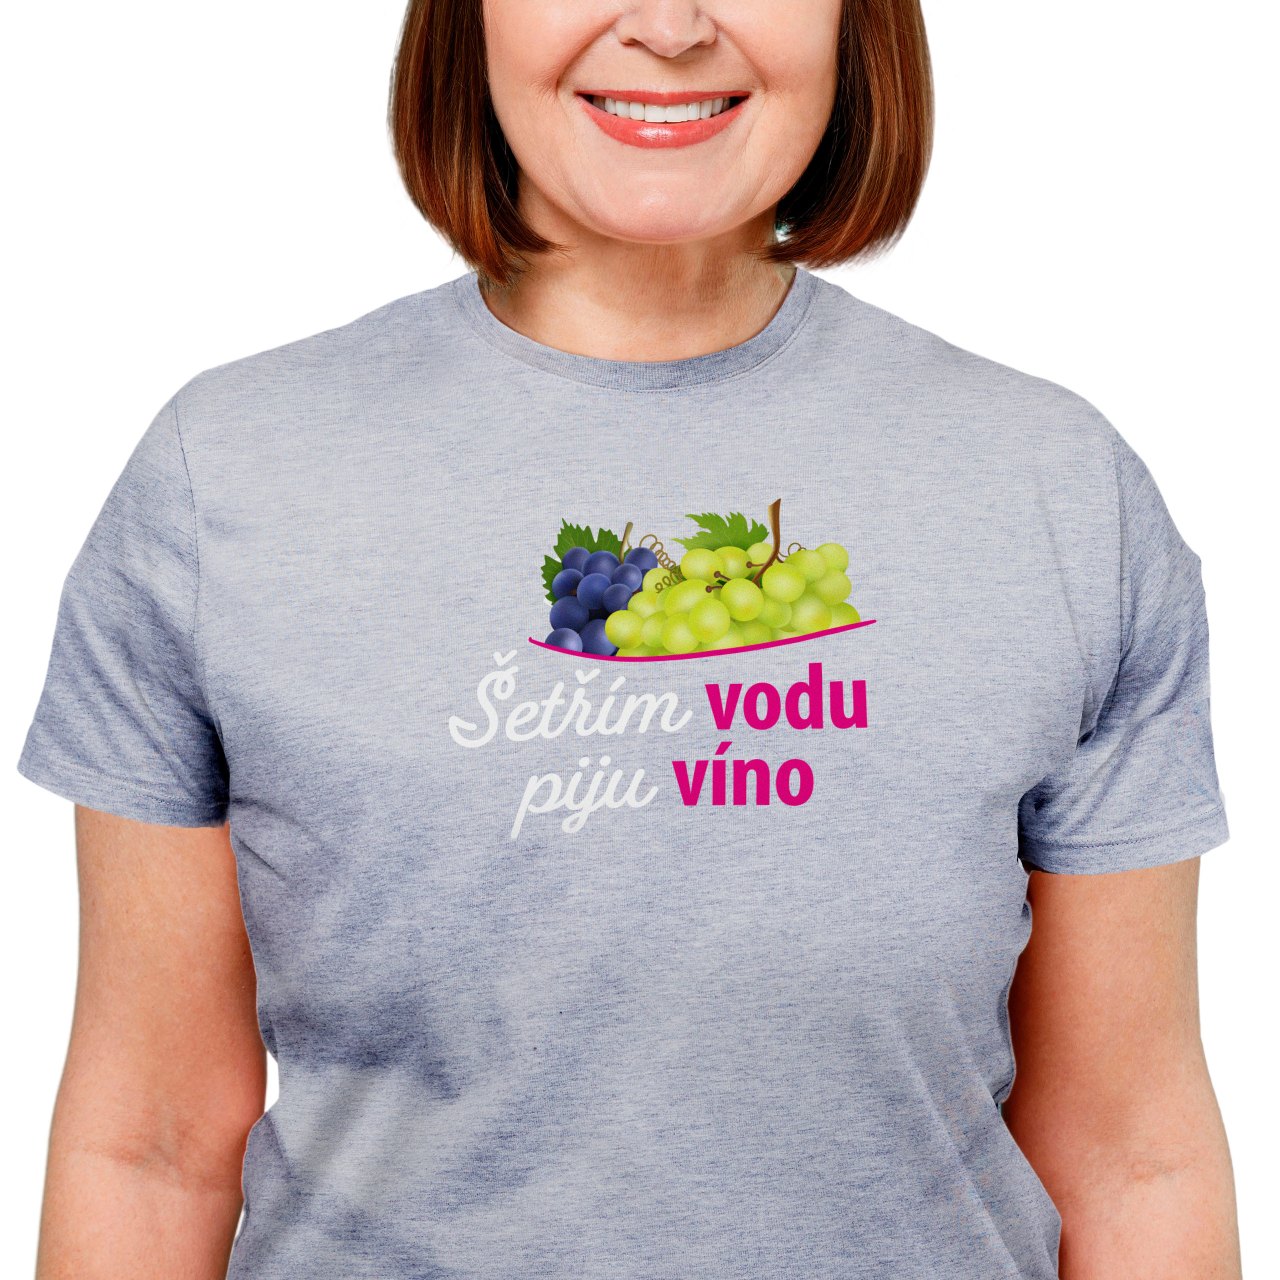 Dámské tričko s potiskem “Šetřím vodu, piju víno”